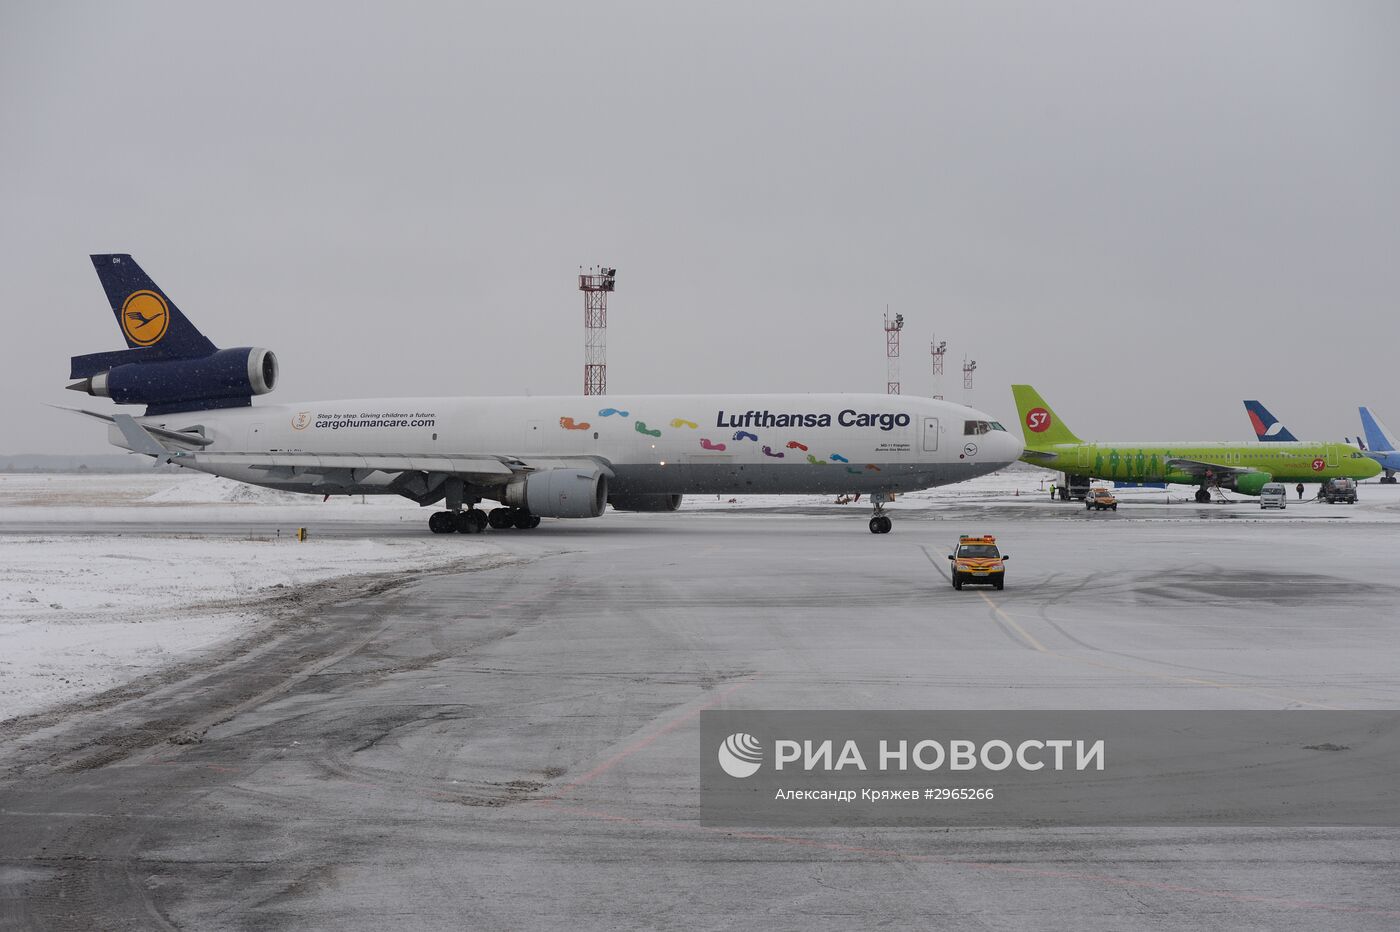 Начало обслуживания авиакомпании Lufthansa Cargo в аэропорту Новосибирска